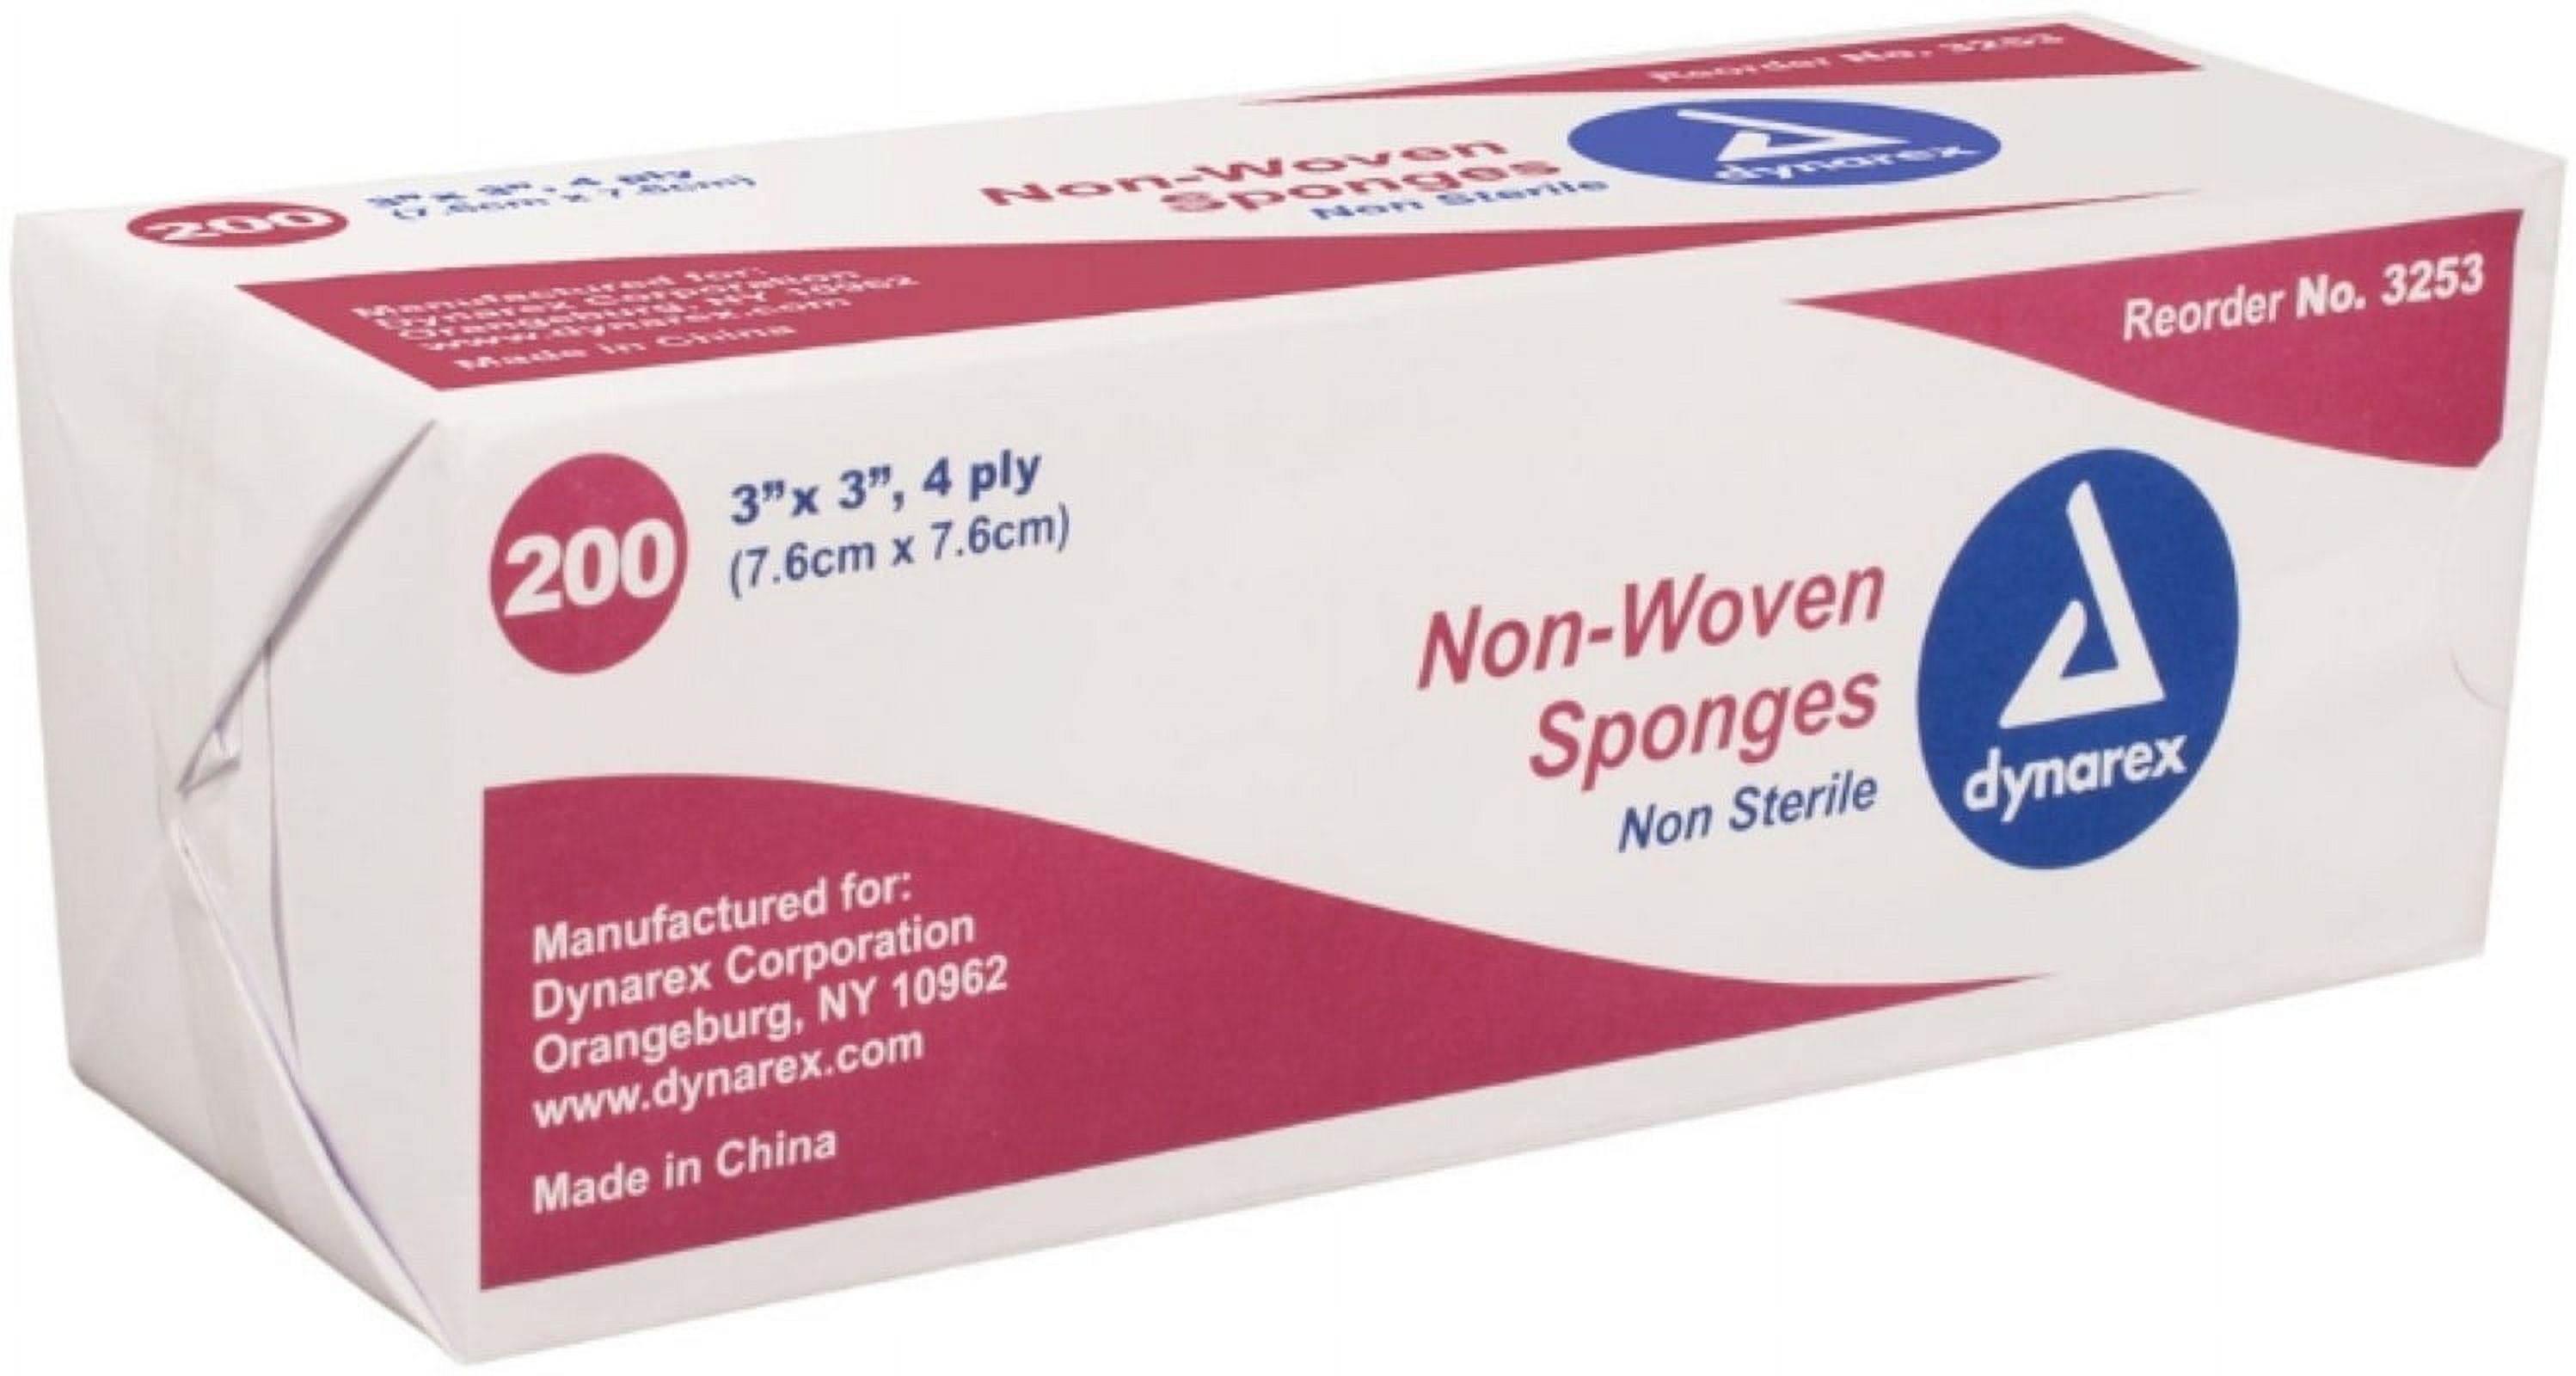 Bulk Sponge, 3 x 3, Non-Woven New Sponge, Nonsterile, 4-ply, 200